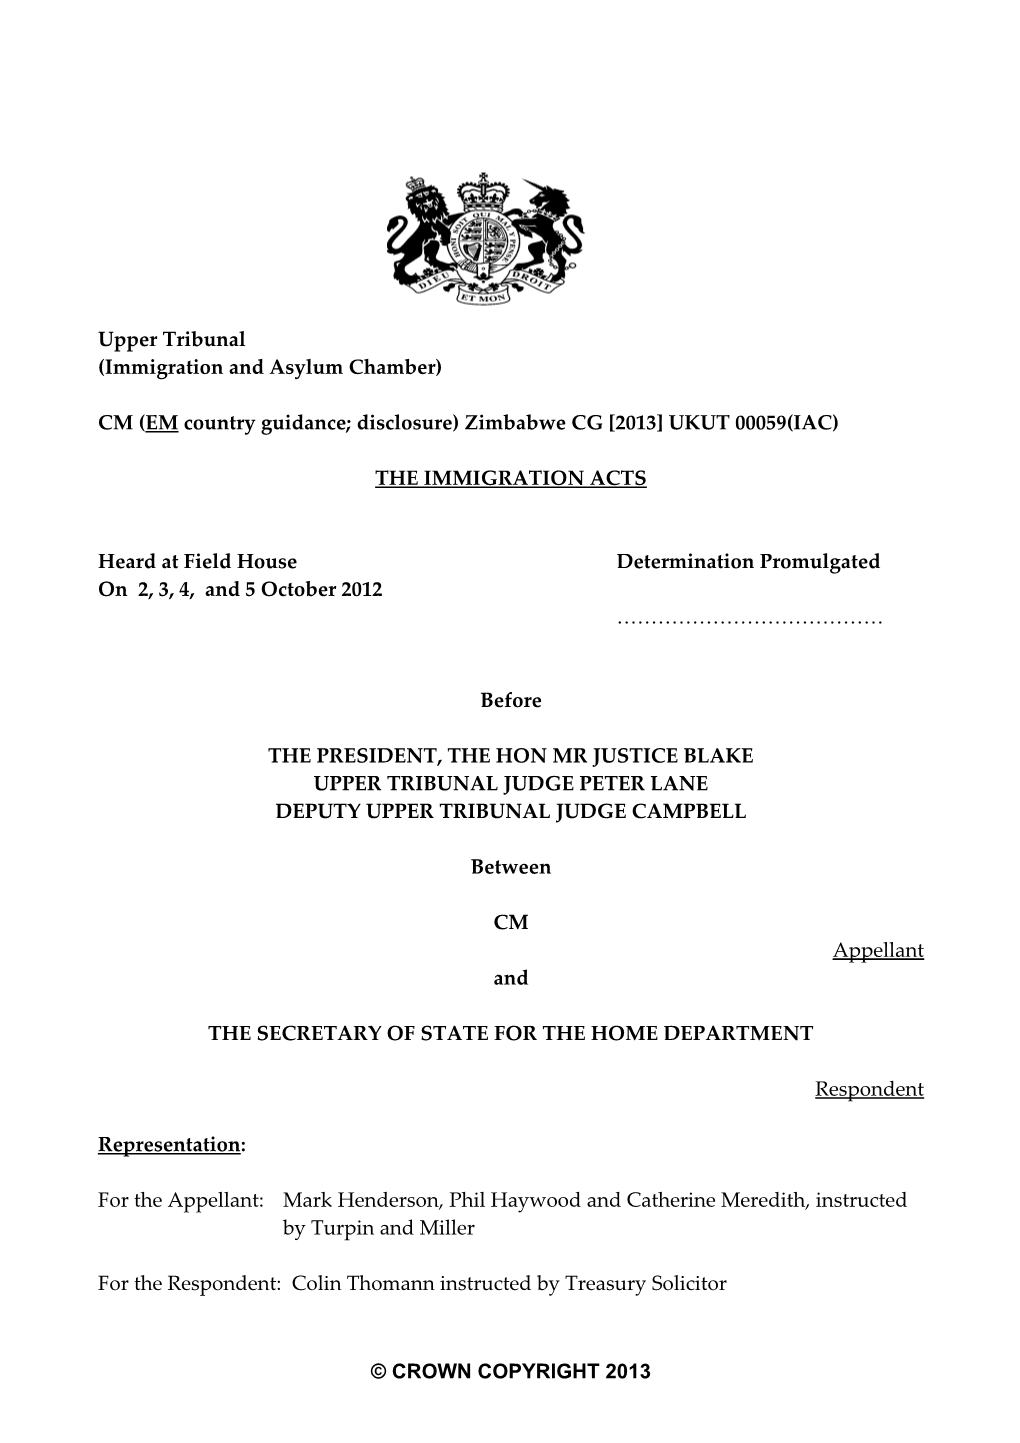 CM (EM Country Guidance; Disclosure)Zimbabwe CG 2013 UKUT 00059(IAC)